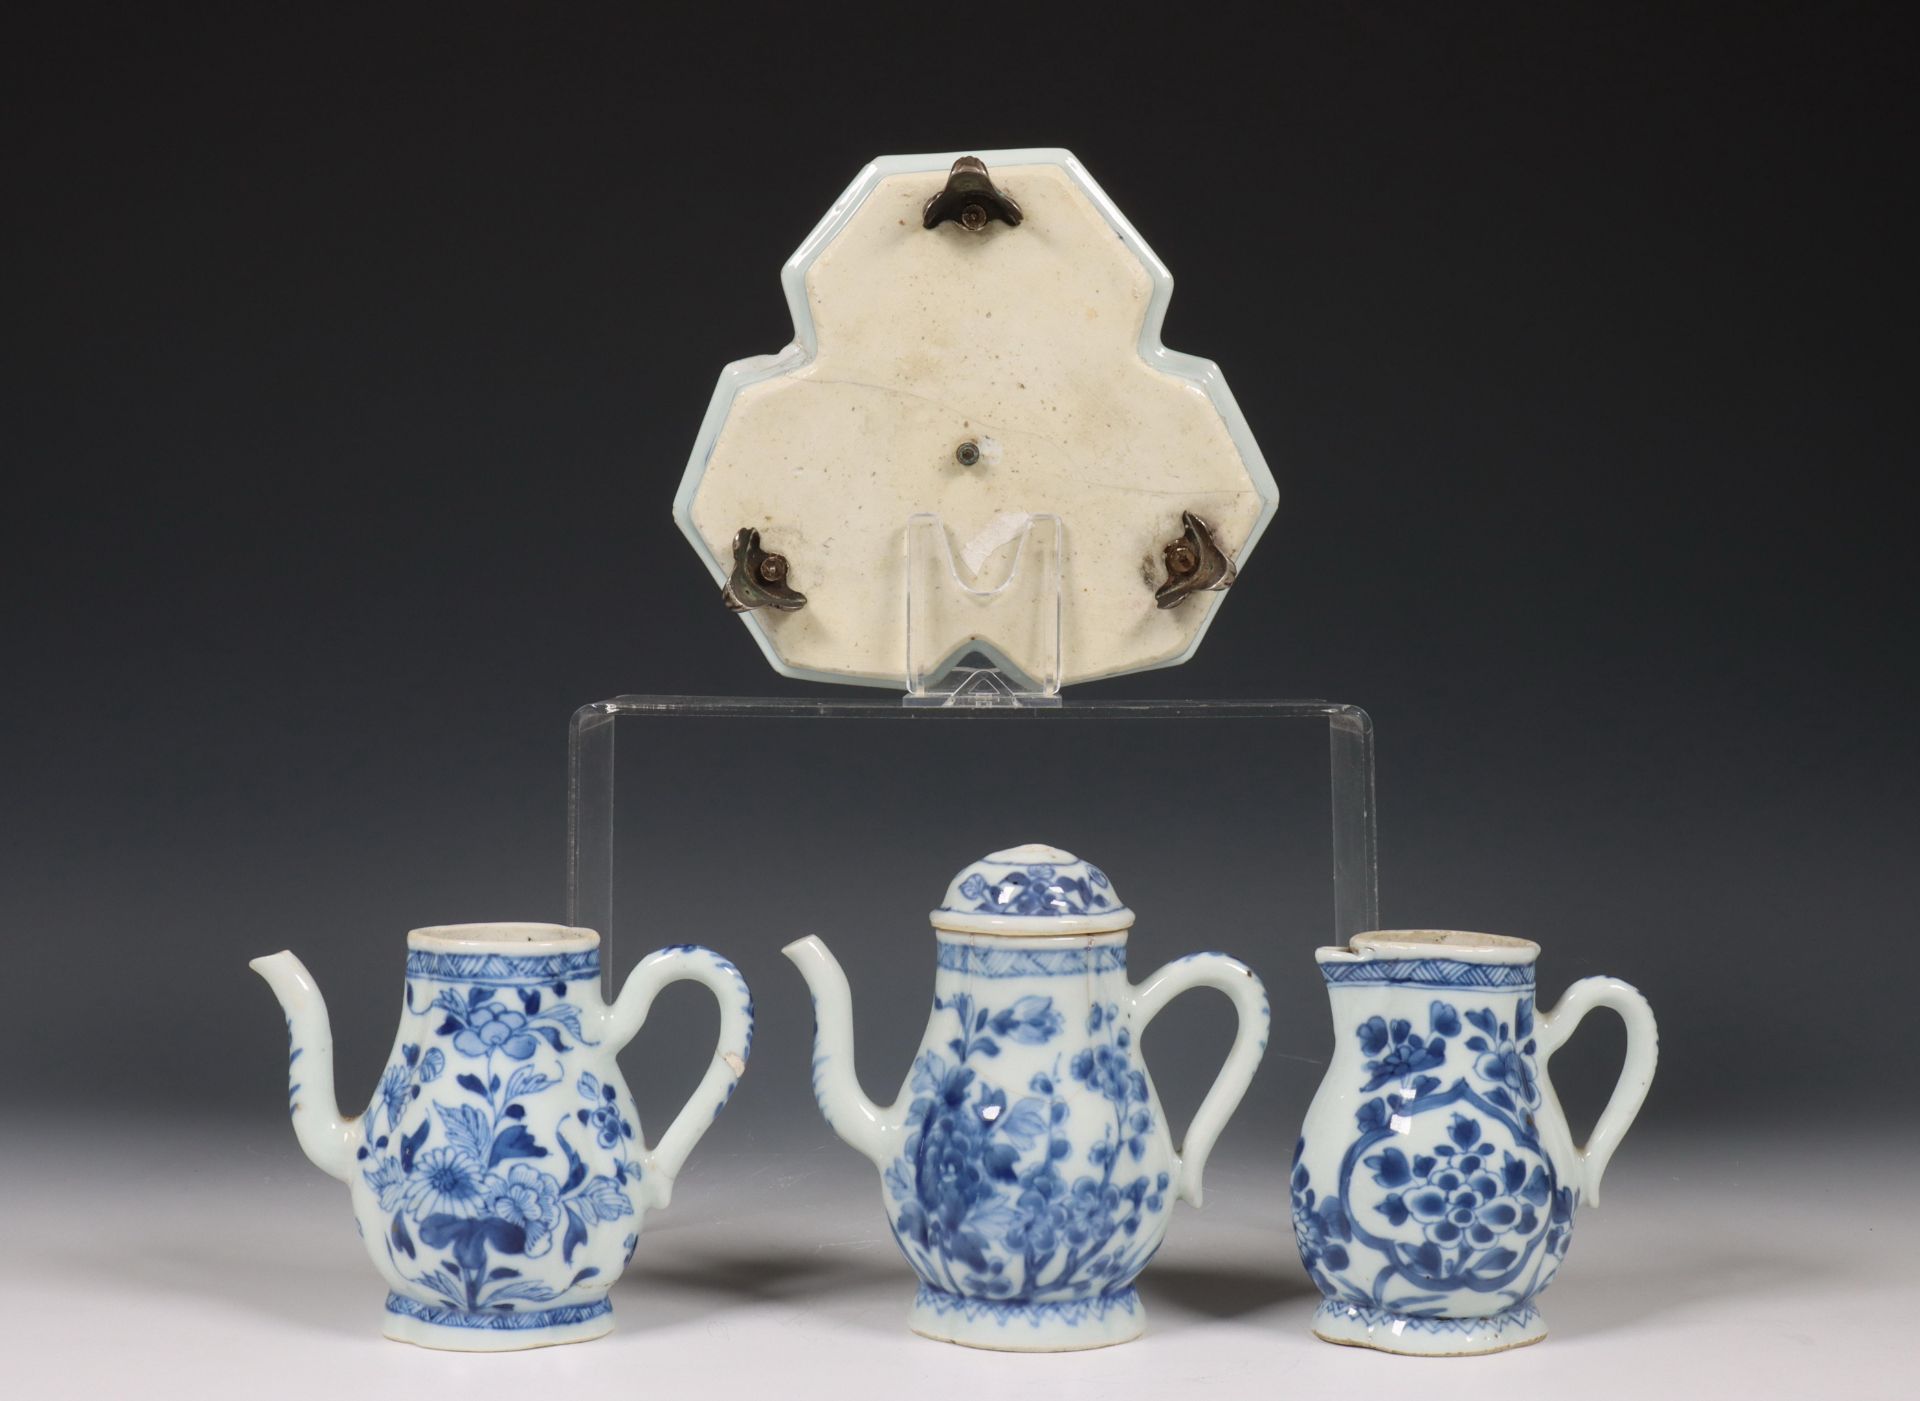 China, samengesteld blauw-wit porseleinen olie- en azijnstel, 18e eeuw, - Bild 5 aus 6